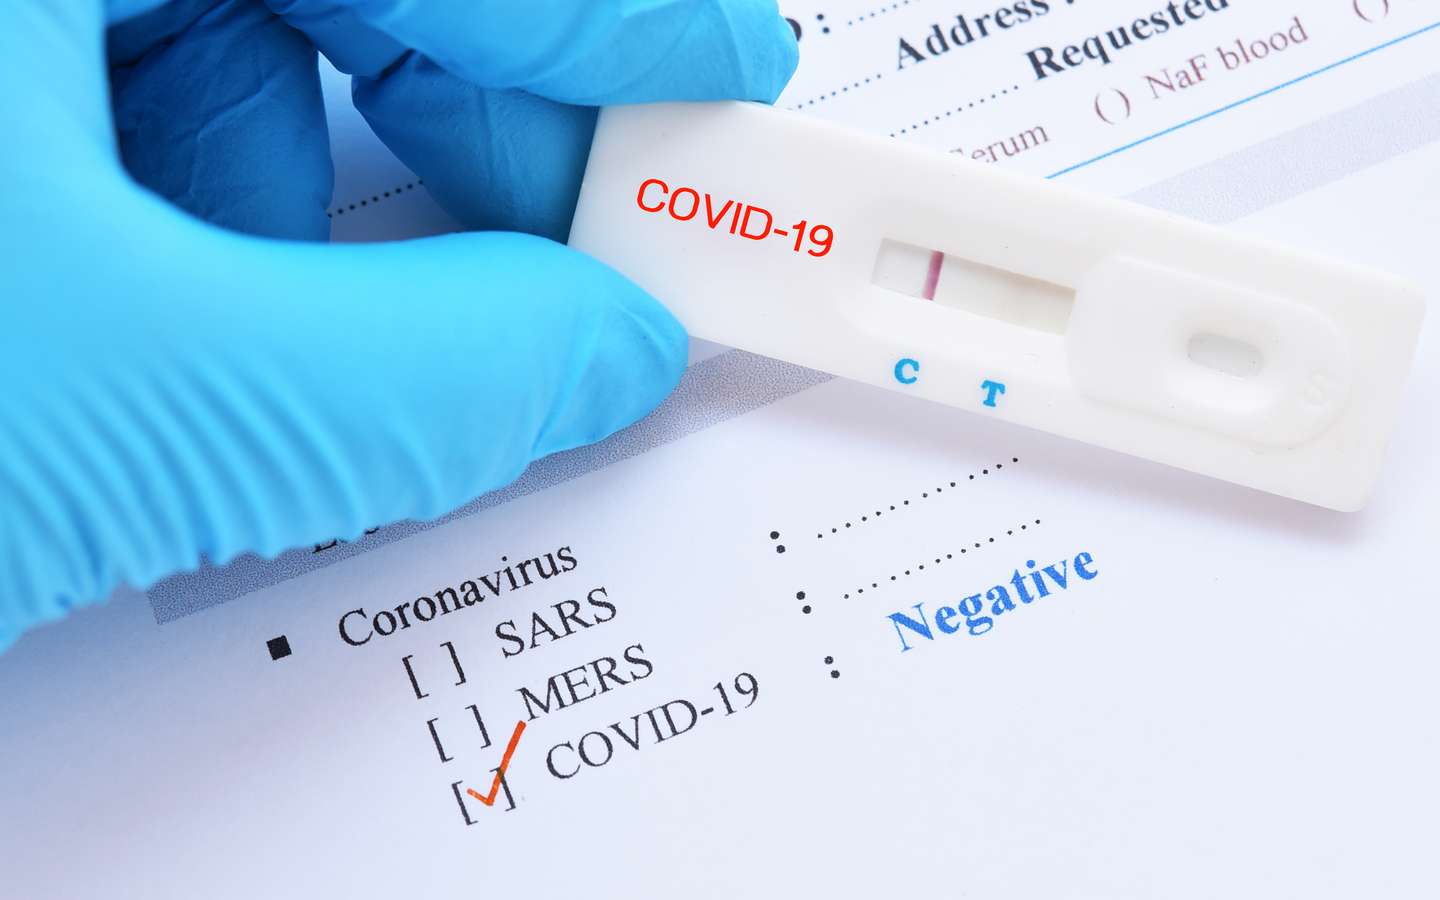 Test de salive à l'antigène COVID